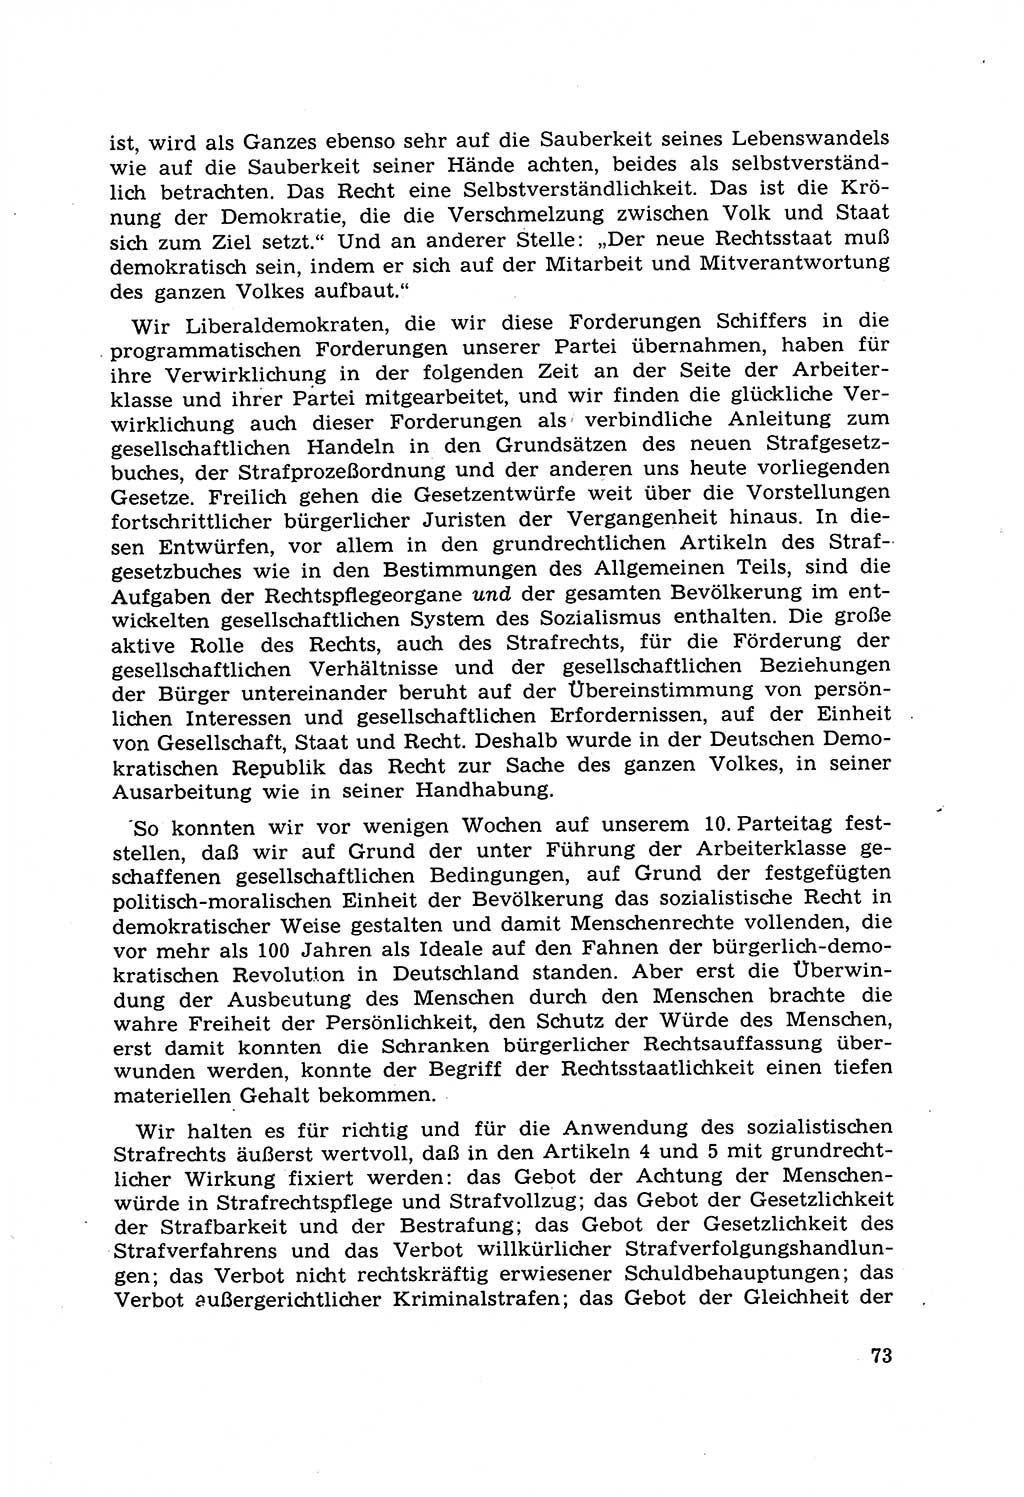 Strafrecht [Deutsche Demokratische Republik (DDR)] 1968, Seite 73 (Strafr. DDR 1968, S. 73)